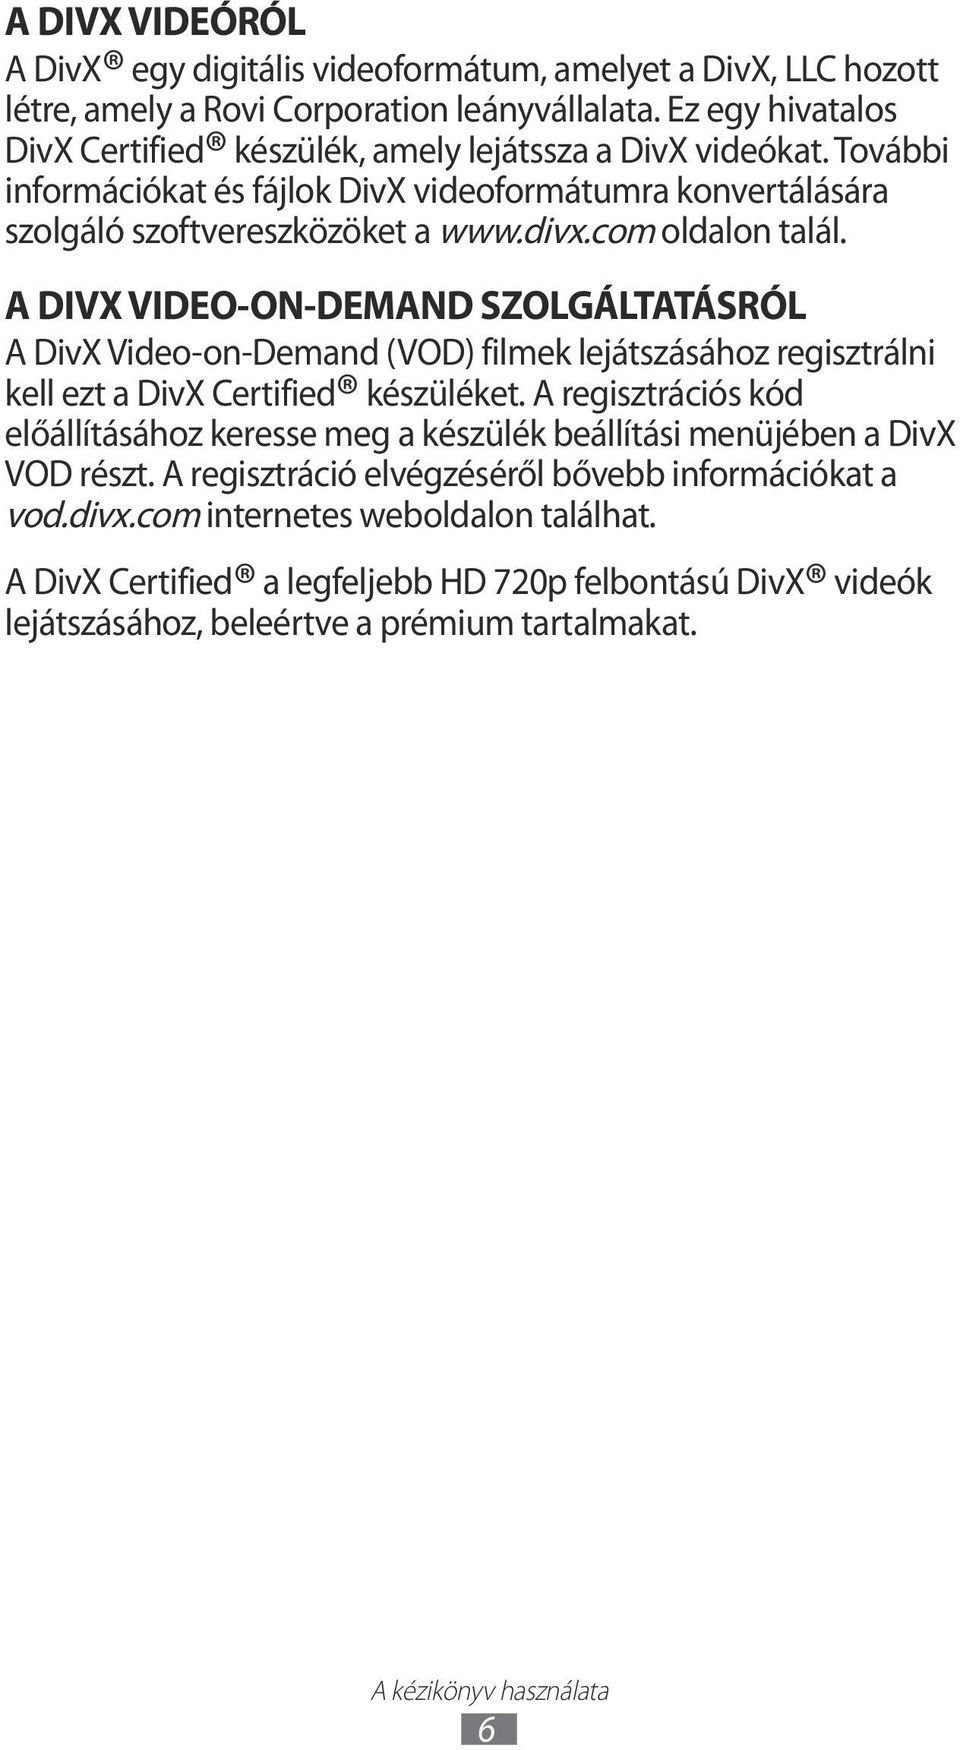 com oldalon talál. A DIVX VIDEO-ON-DEMAND SZOLGÁLTATÁSRÓL A DivX Video-on-Demand (VOD) filmek lejátszásához regisztrálni kell ezt a DivX Certified készüléket.